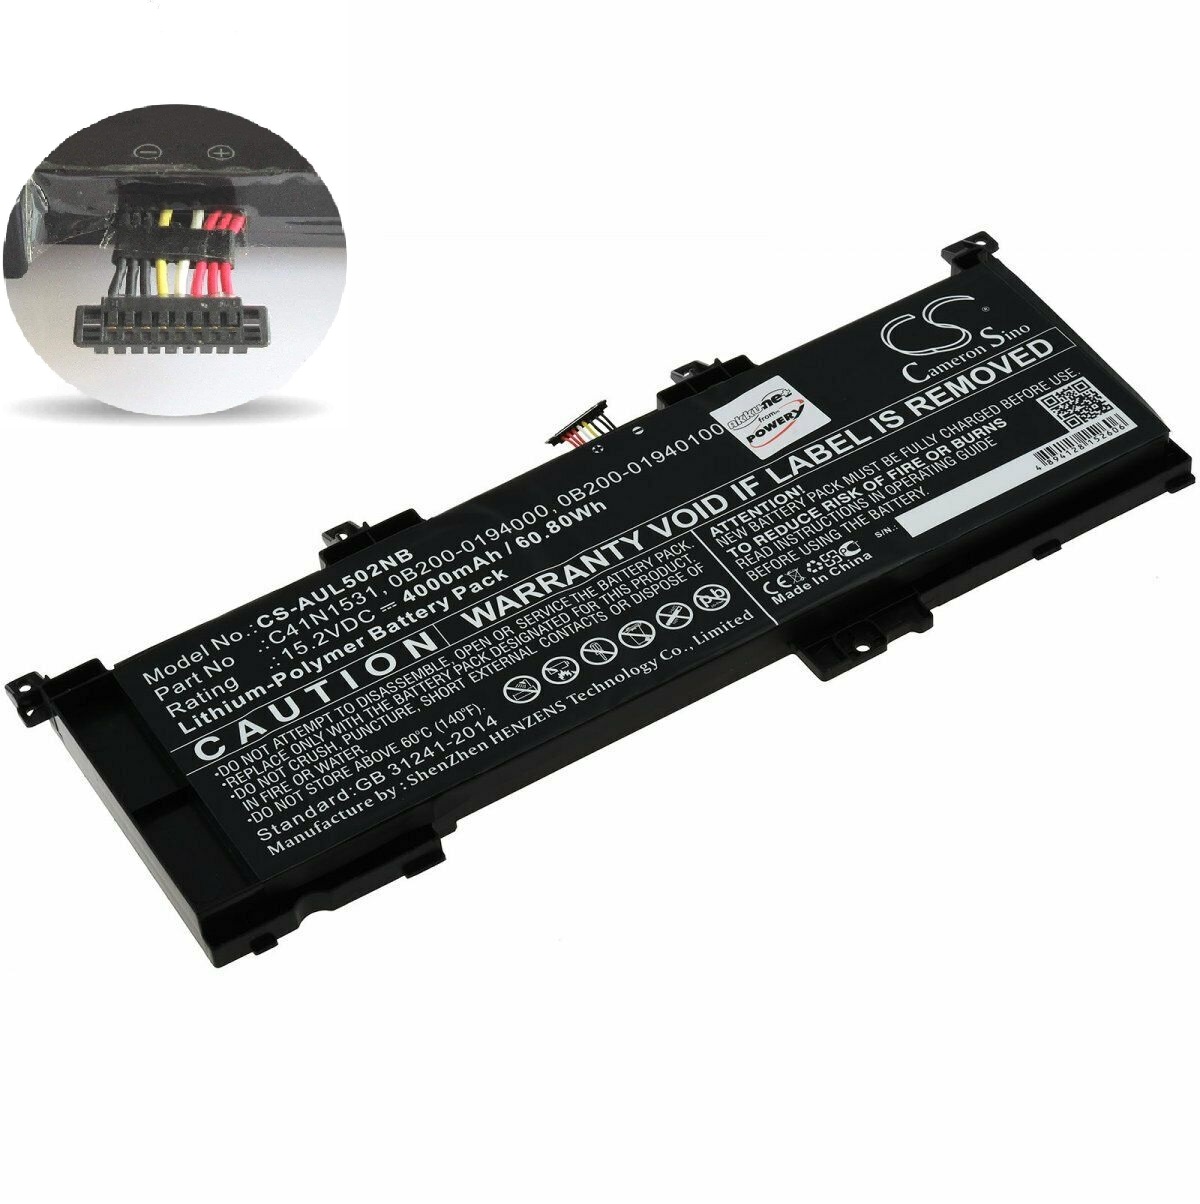 Batteri til Asus GL502VY-DS71 GL502VY-DS74 Rog GL502VS GL502VT Rog Strix GL502VS C41N1531 0B200-01940100 (kompatibelt) - Klik på billedet for at lukke